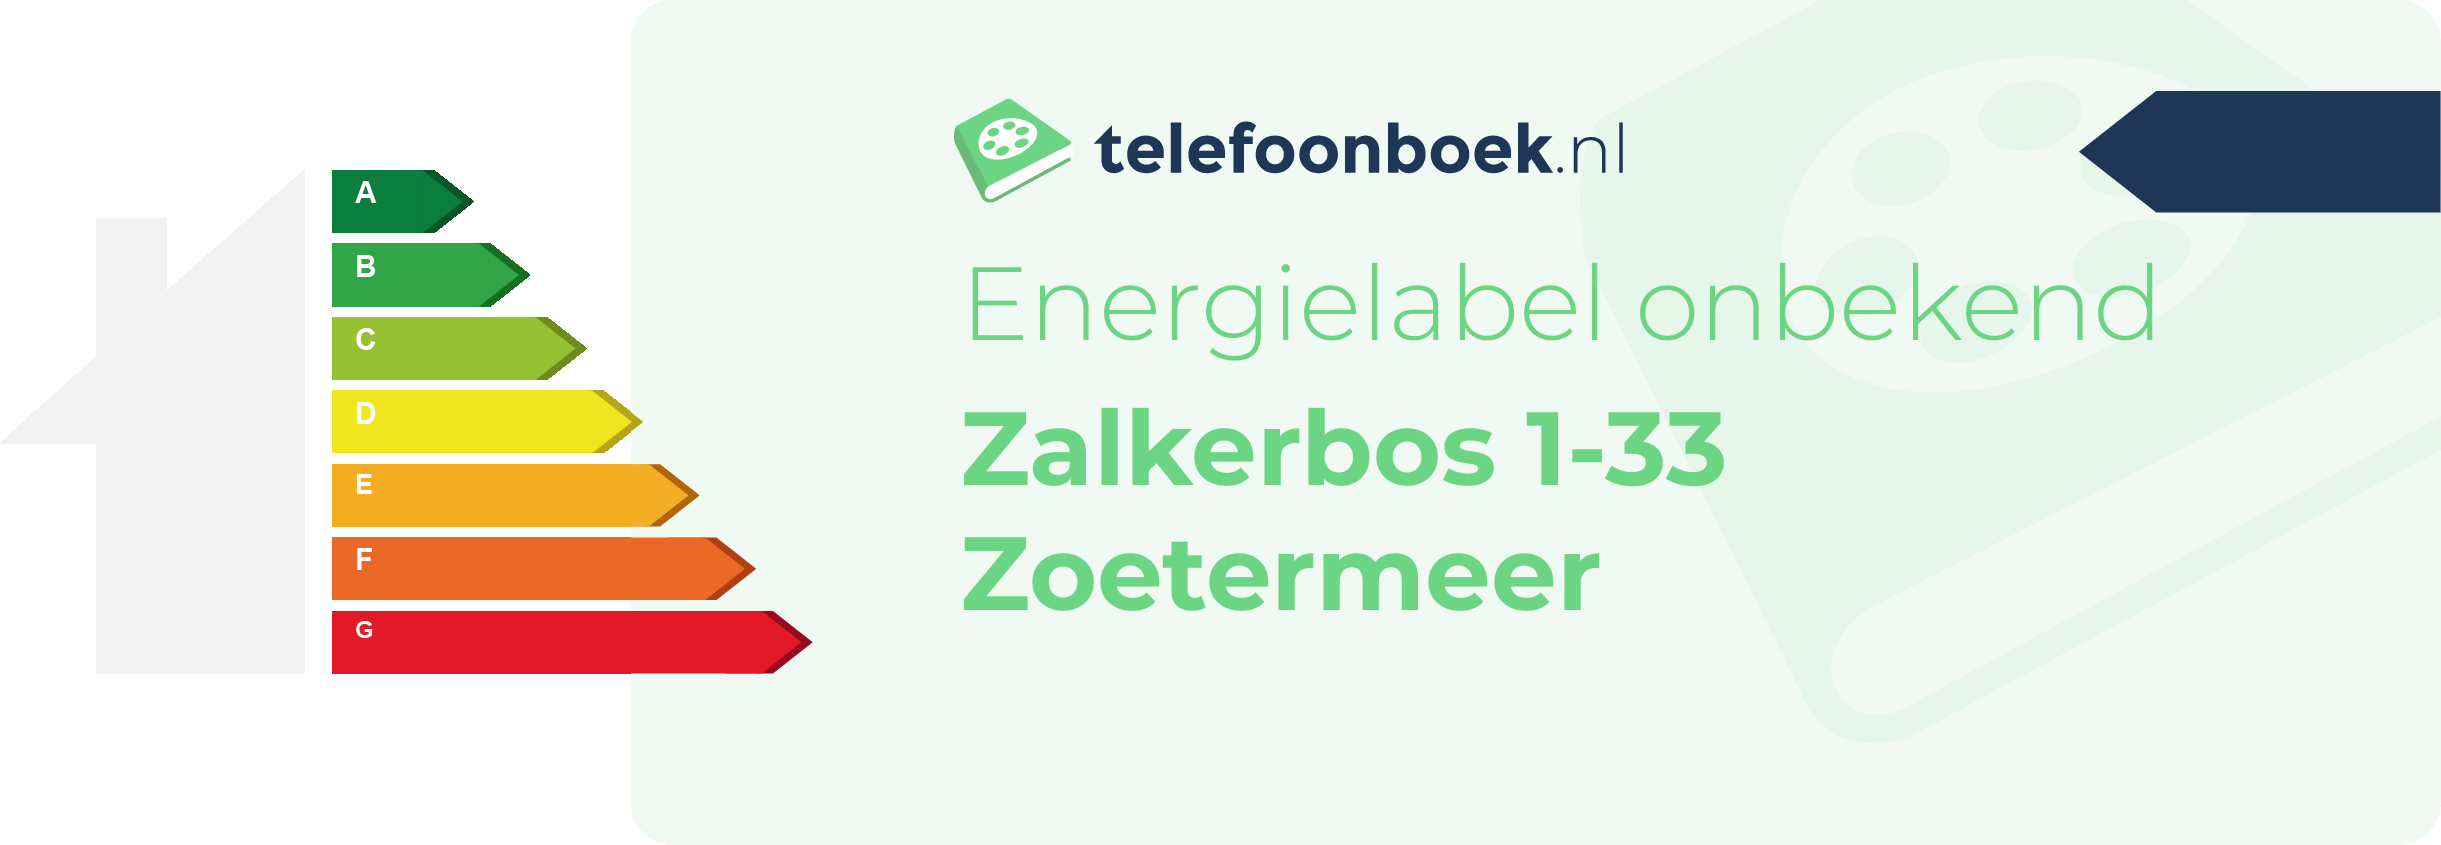 Energielabel Zalkerbos 1-33 Zoetermeer